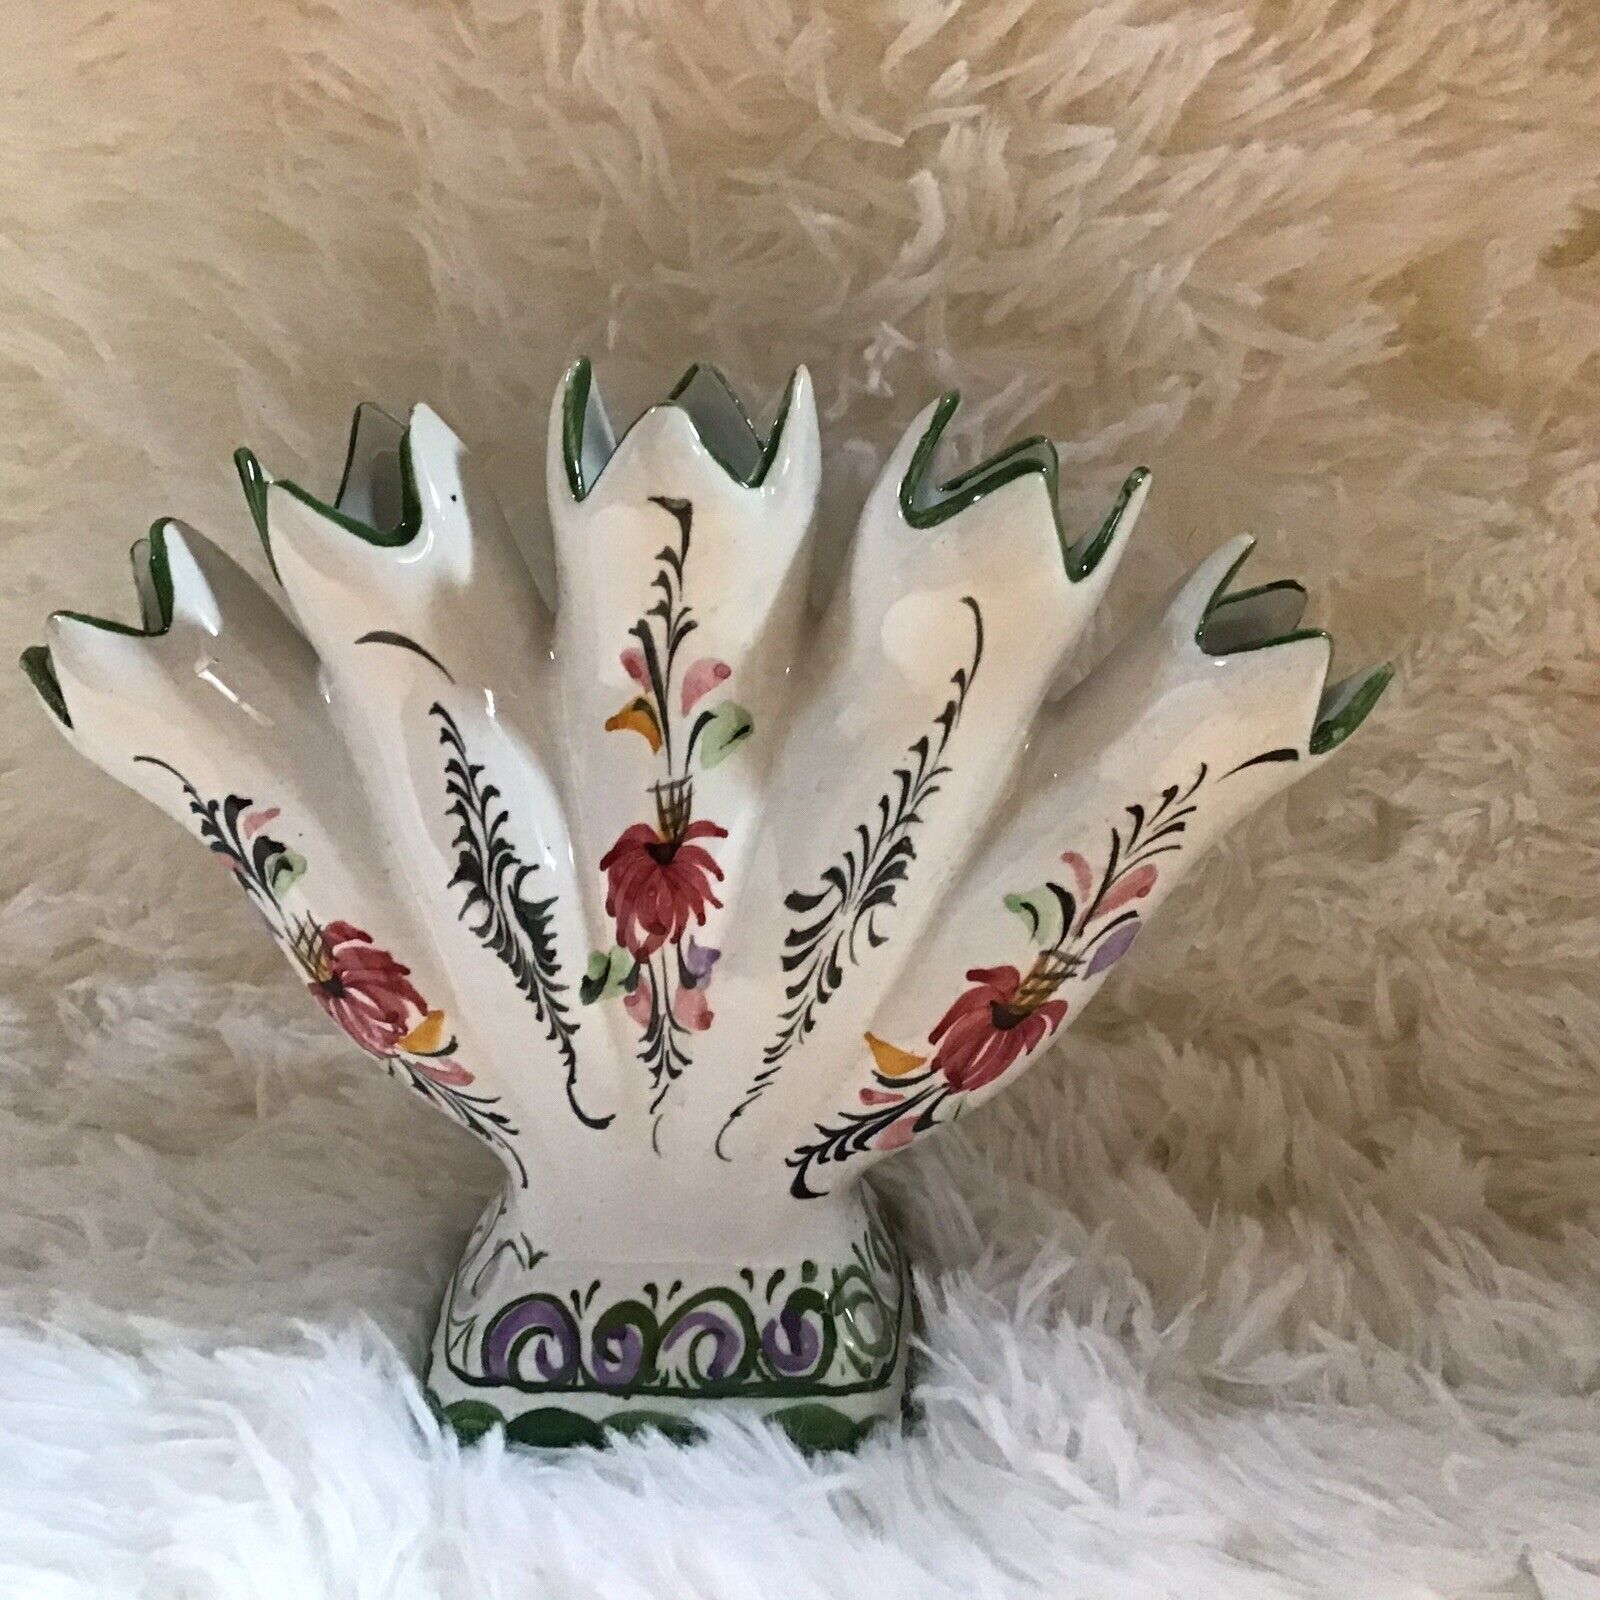 Tulip 5 Finger Bud Vase Portuguese Hand Painted RCCL Ceramic Vintage Cottage